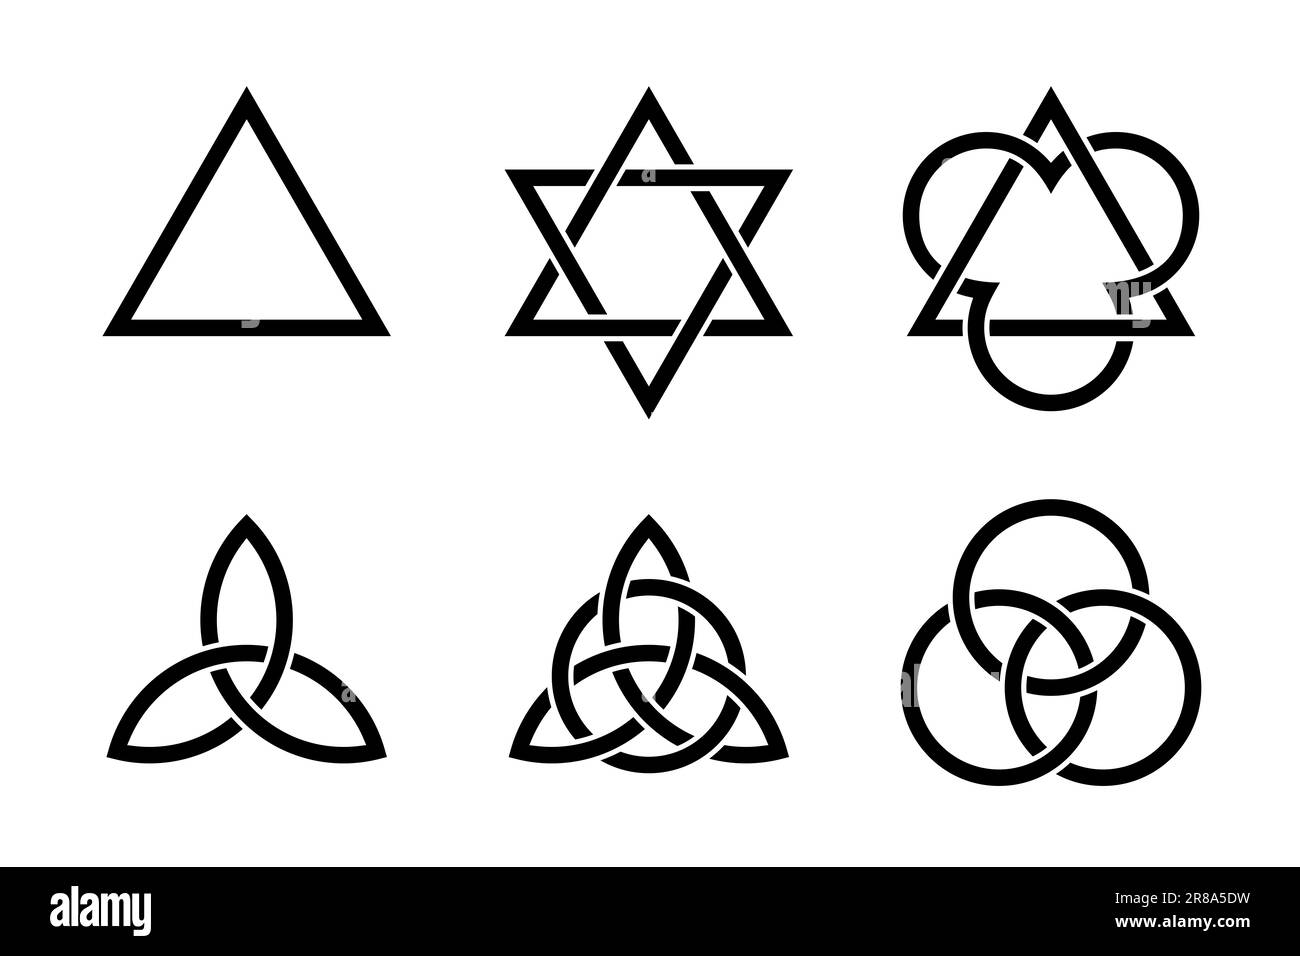 Simboli della Trinità. Cristiani e simboli antichi, formati da triangoli interlacciati, triquetras celtici e cerchi. Foto Stock